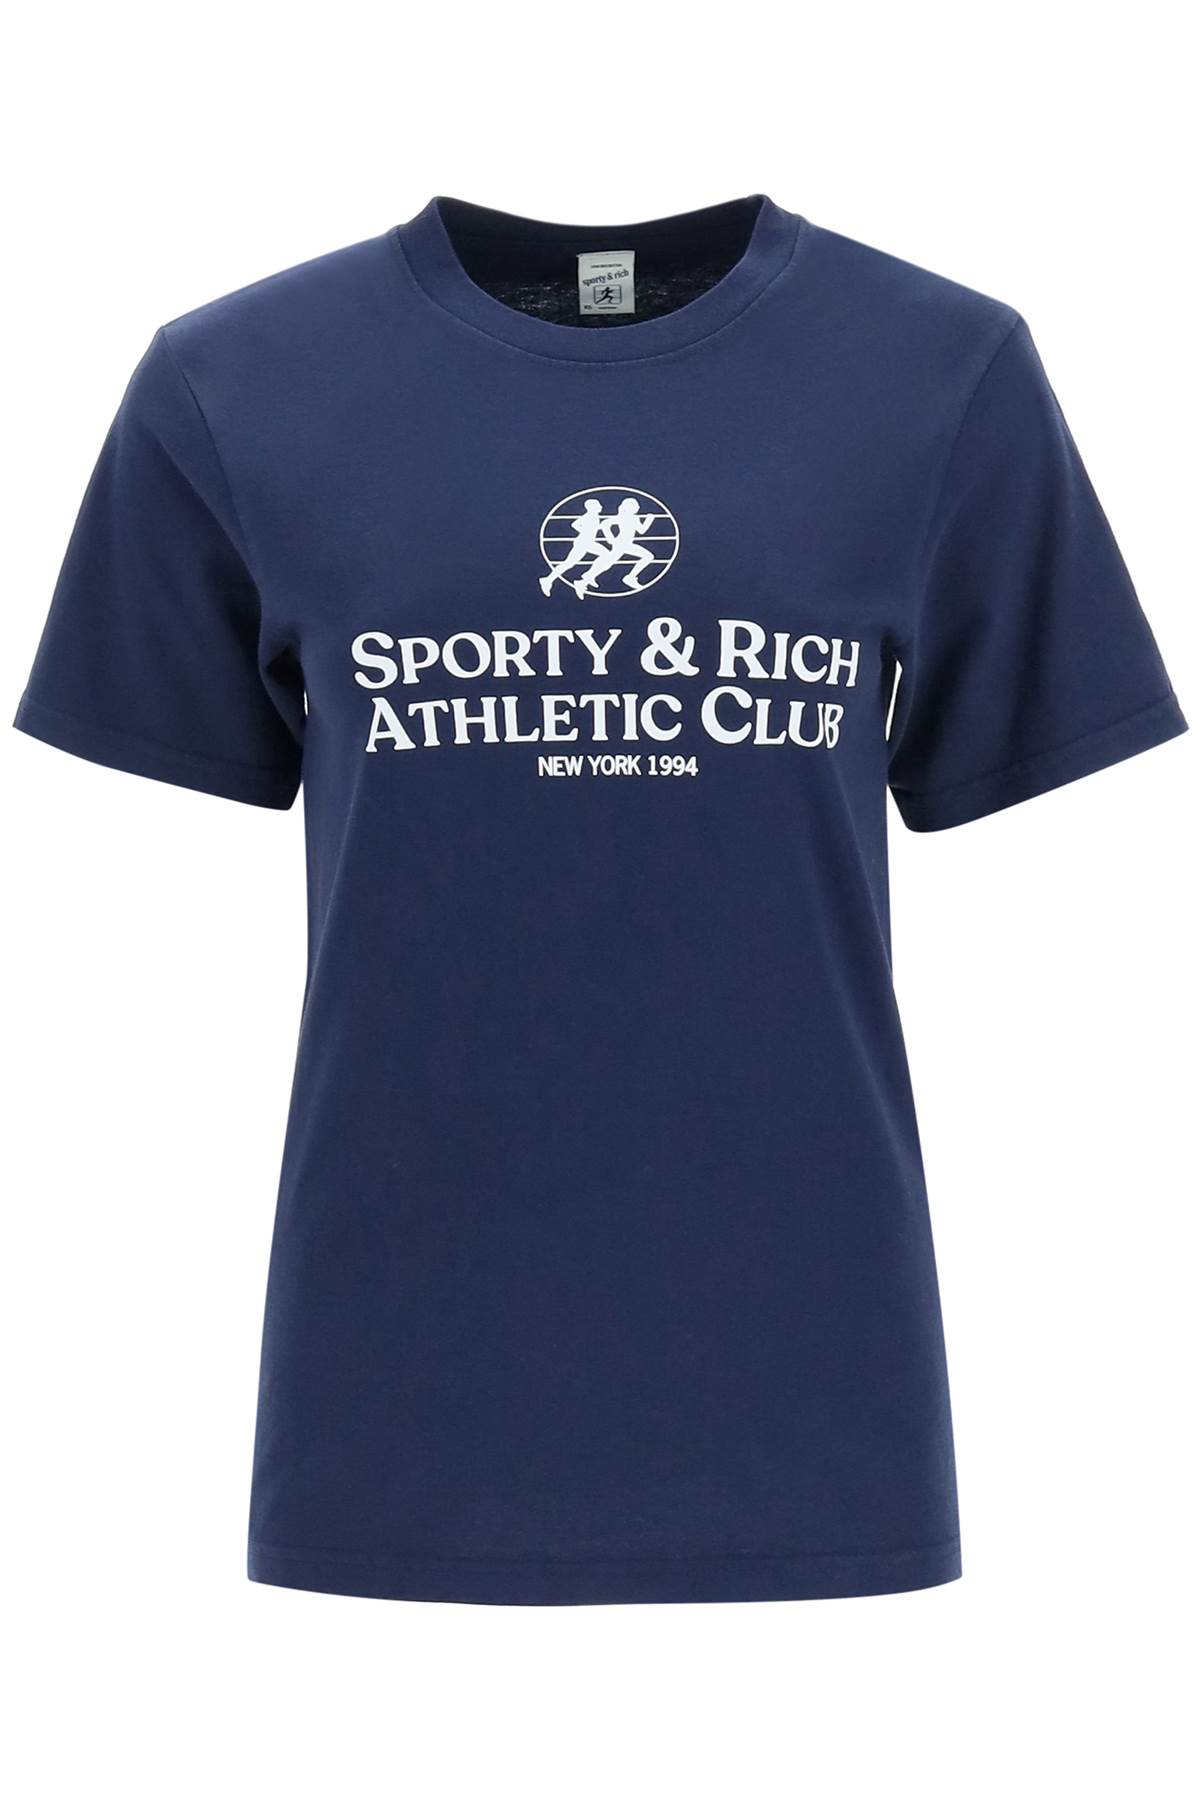 Sporty & Rich S & r Athletic Club T-shirt